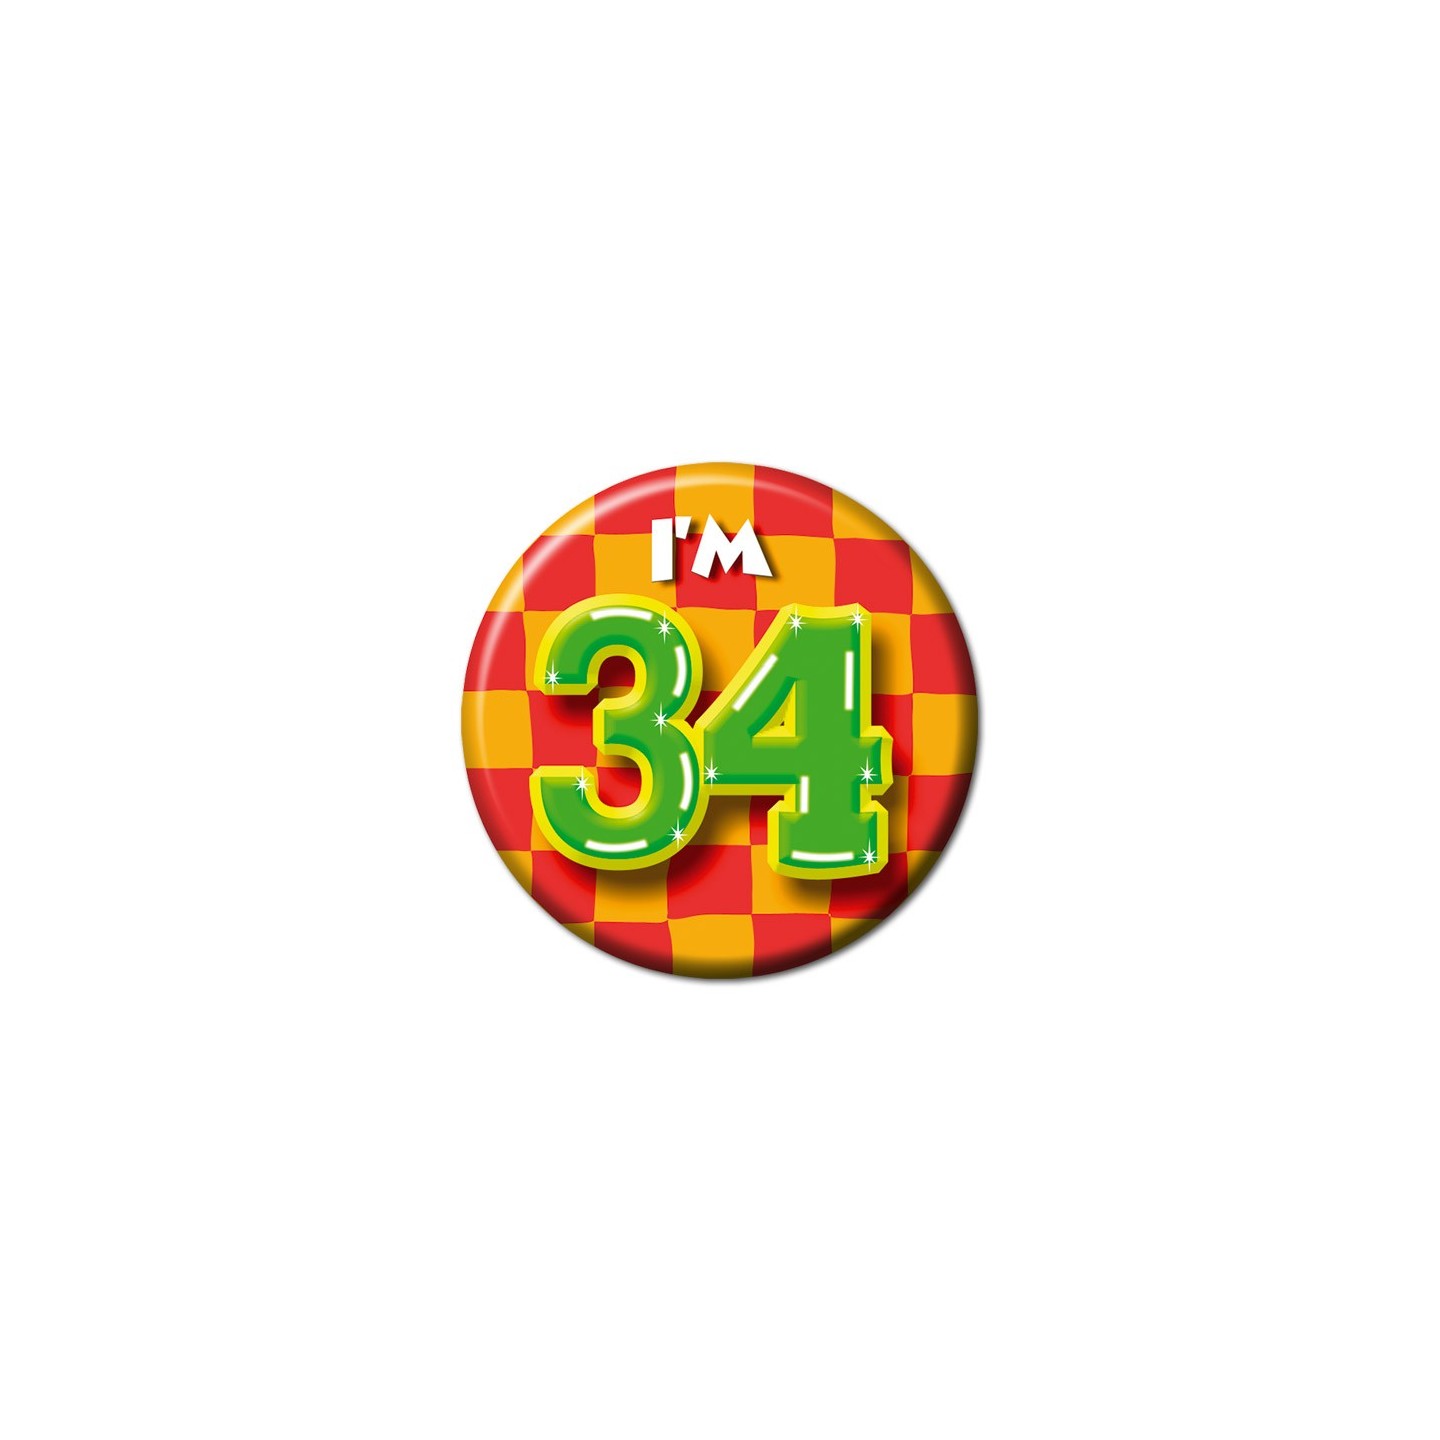 button 34 jaar verjaardag